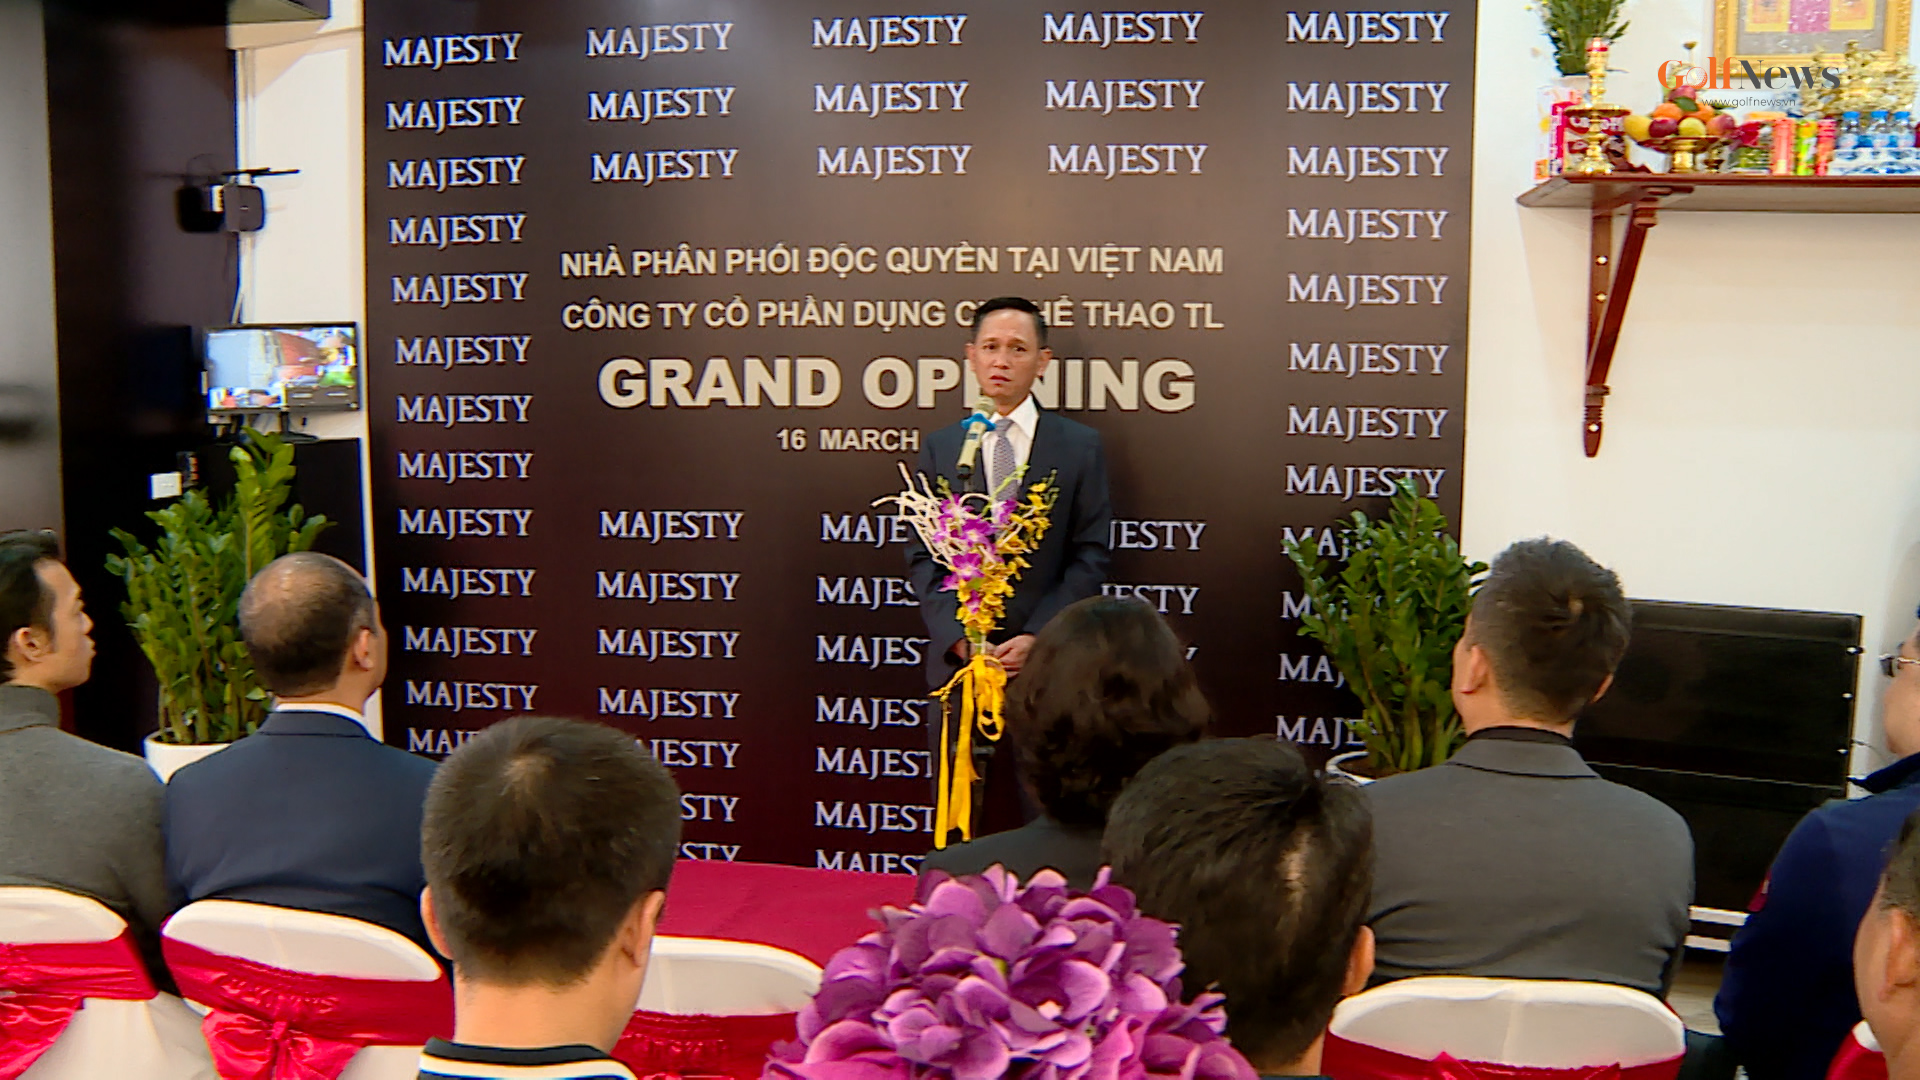 Majesty thương hiệu golf hạng sang hàng đầu Nhật Bản đã có mặt ở Việt Nam